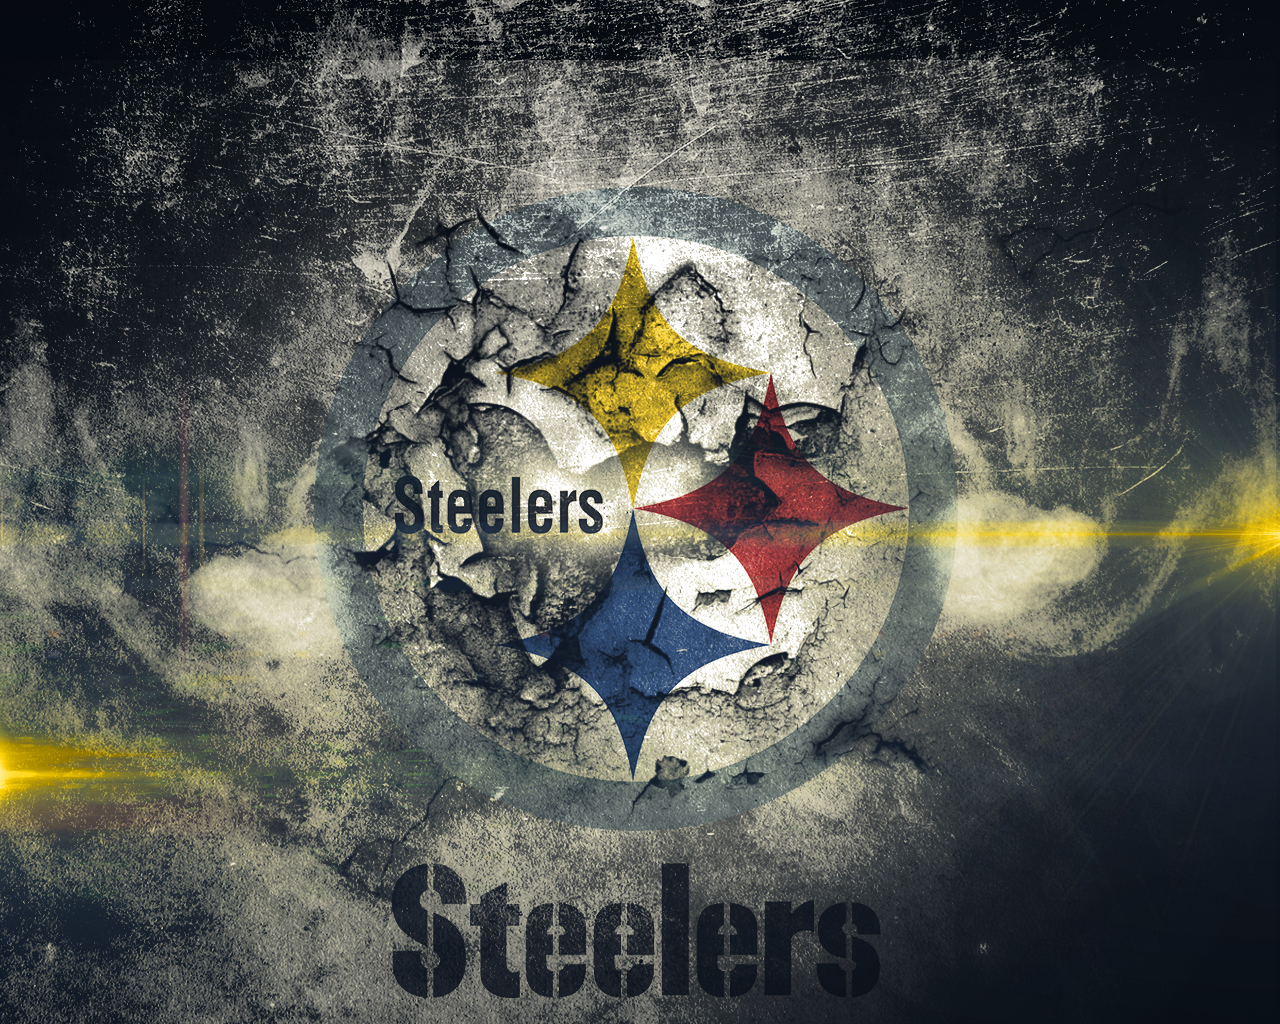 Pittsburgh Steelers wallpaper